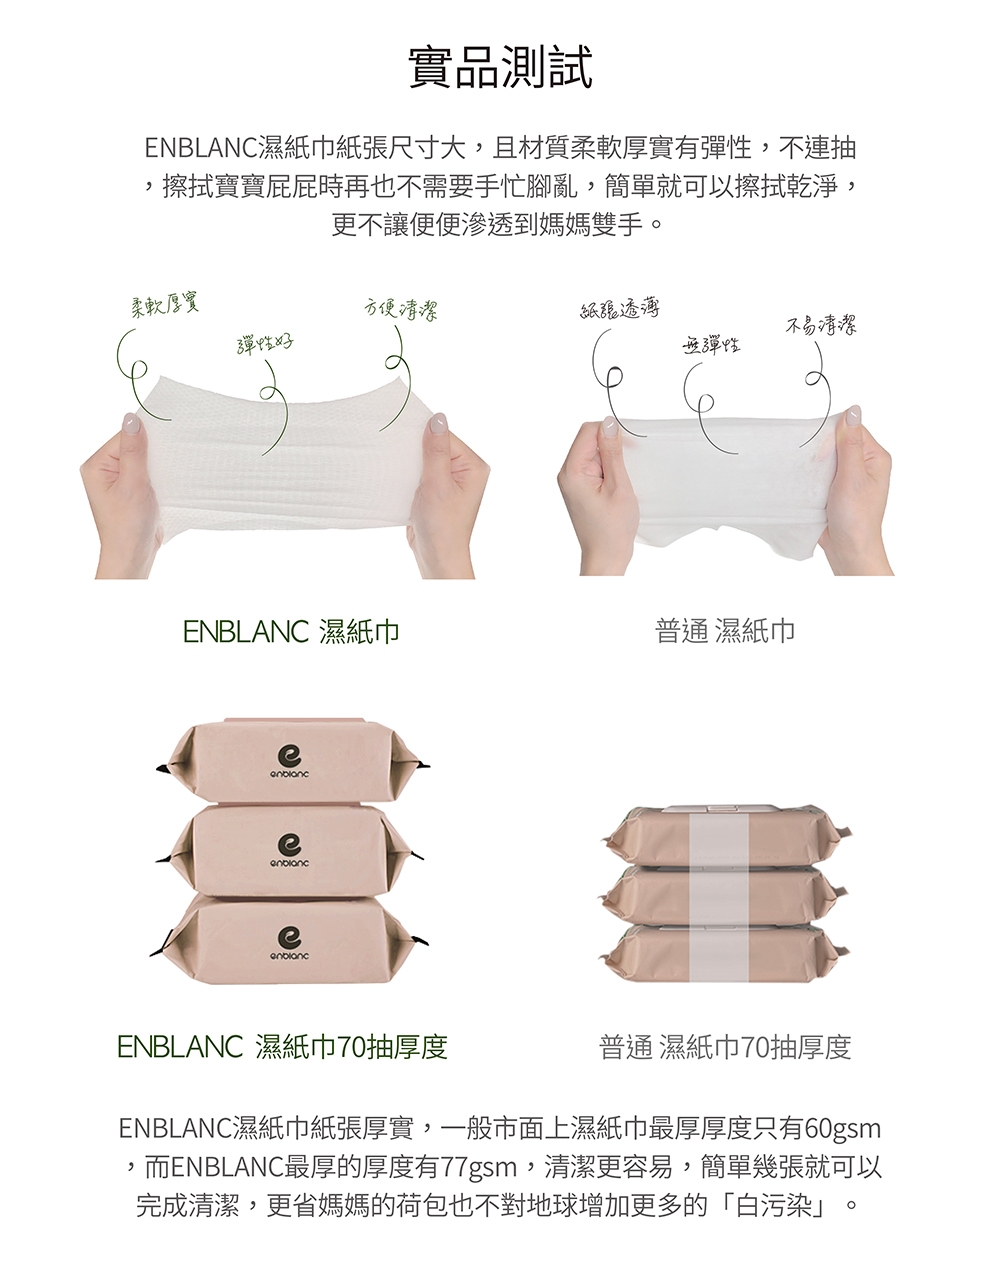 韓國 ENBLANC 綜合大包濕紙巾體驗箱10包入